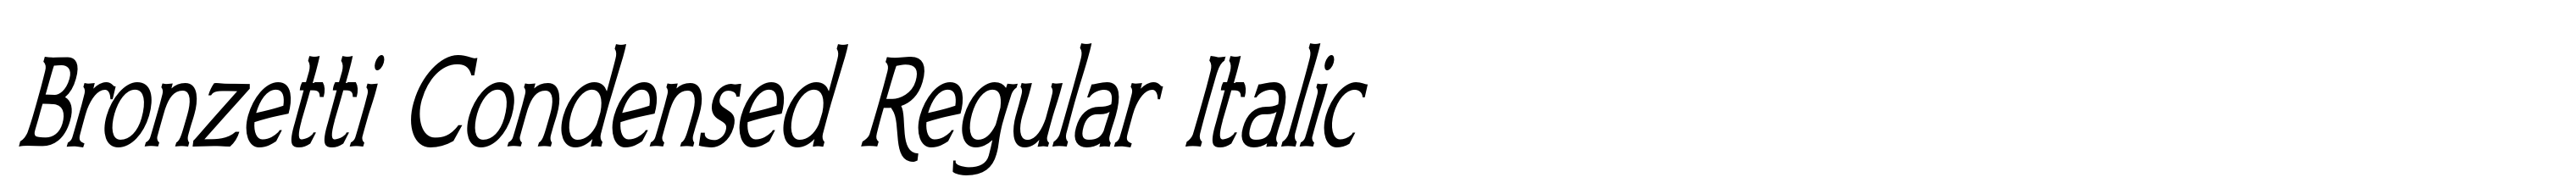 Bronzetti Condensed Regular Italic